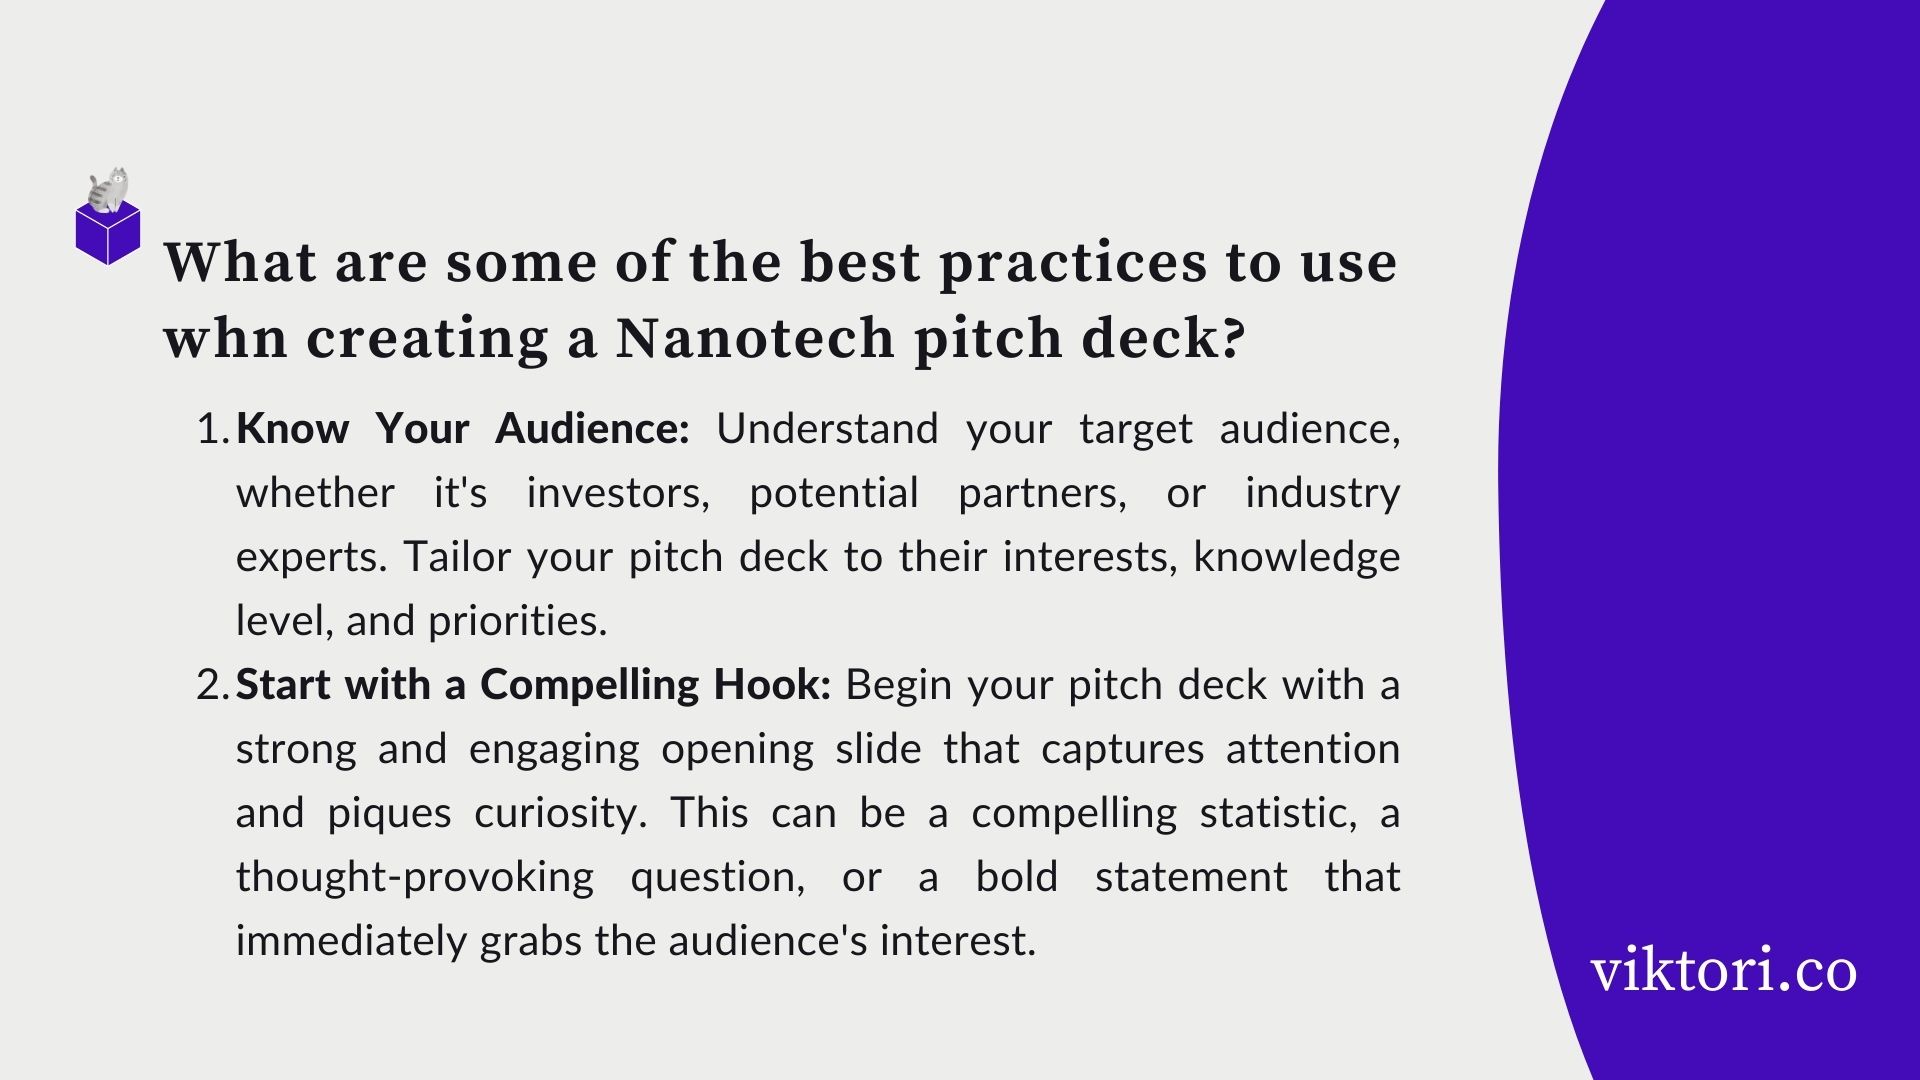 nanotech pitch deck tips